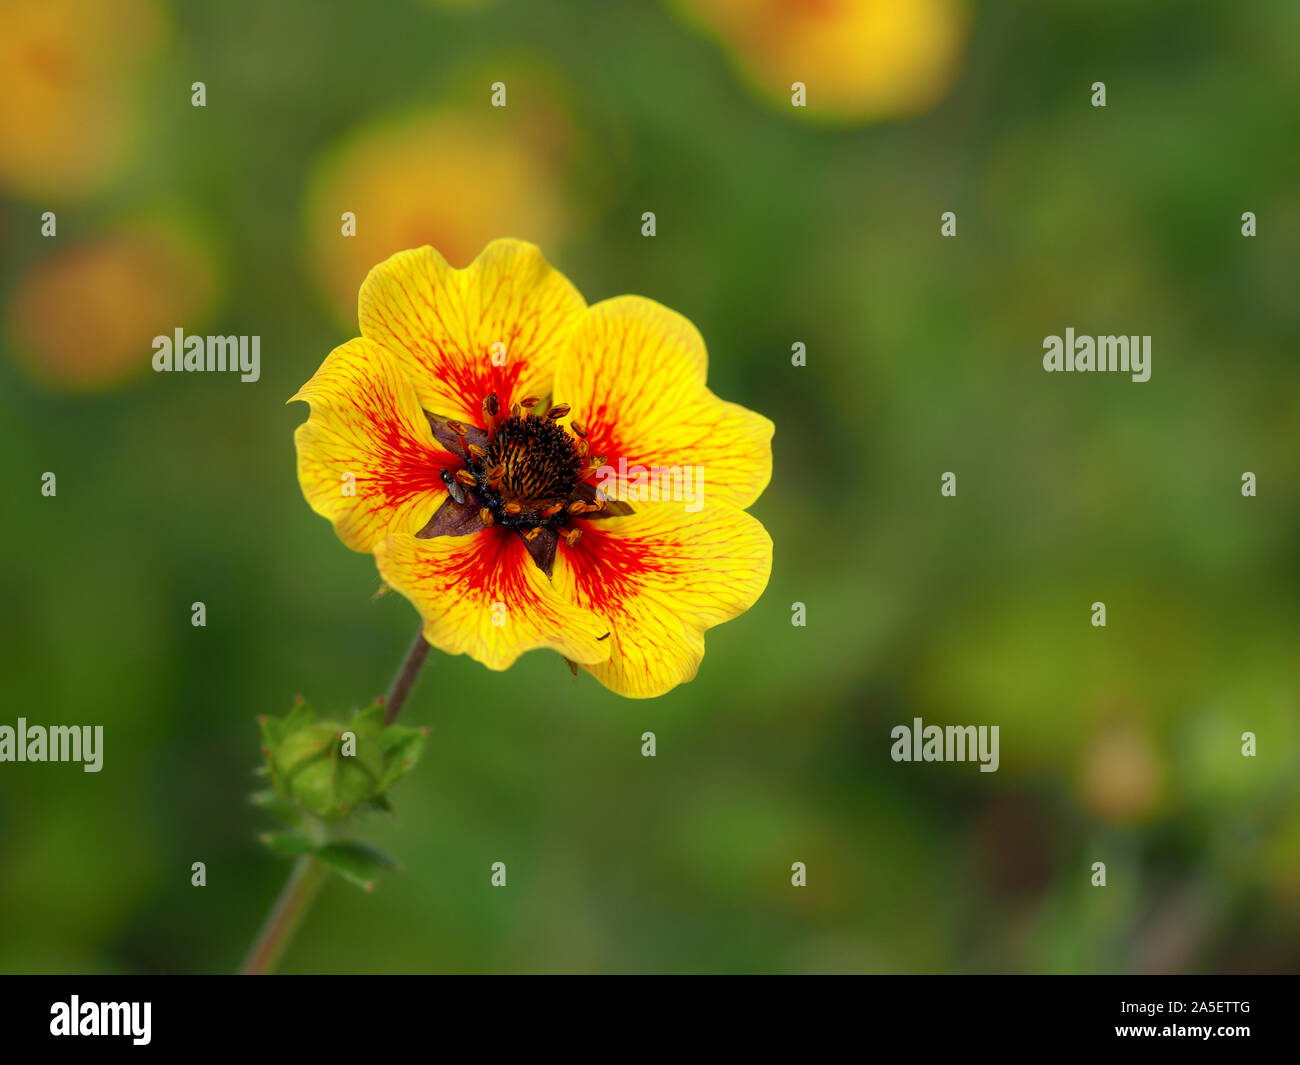 Bright yellow and red Potentilla 'Esta Ann' flower (cinquefoil) Stock Photo